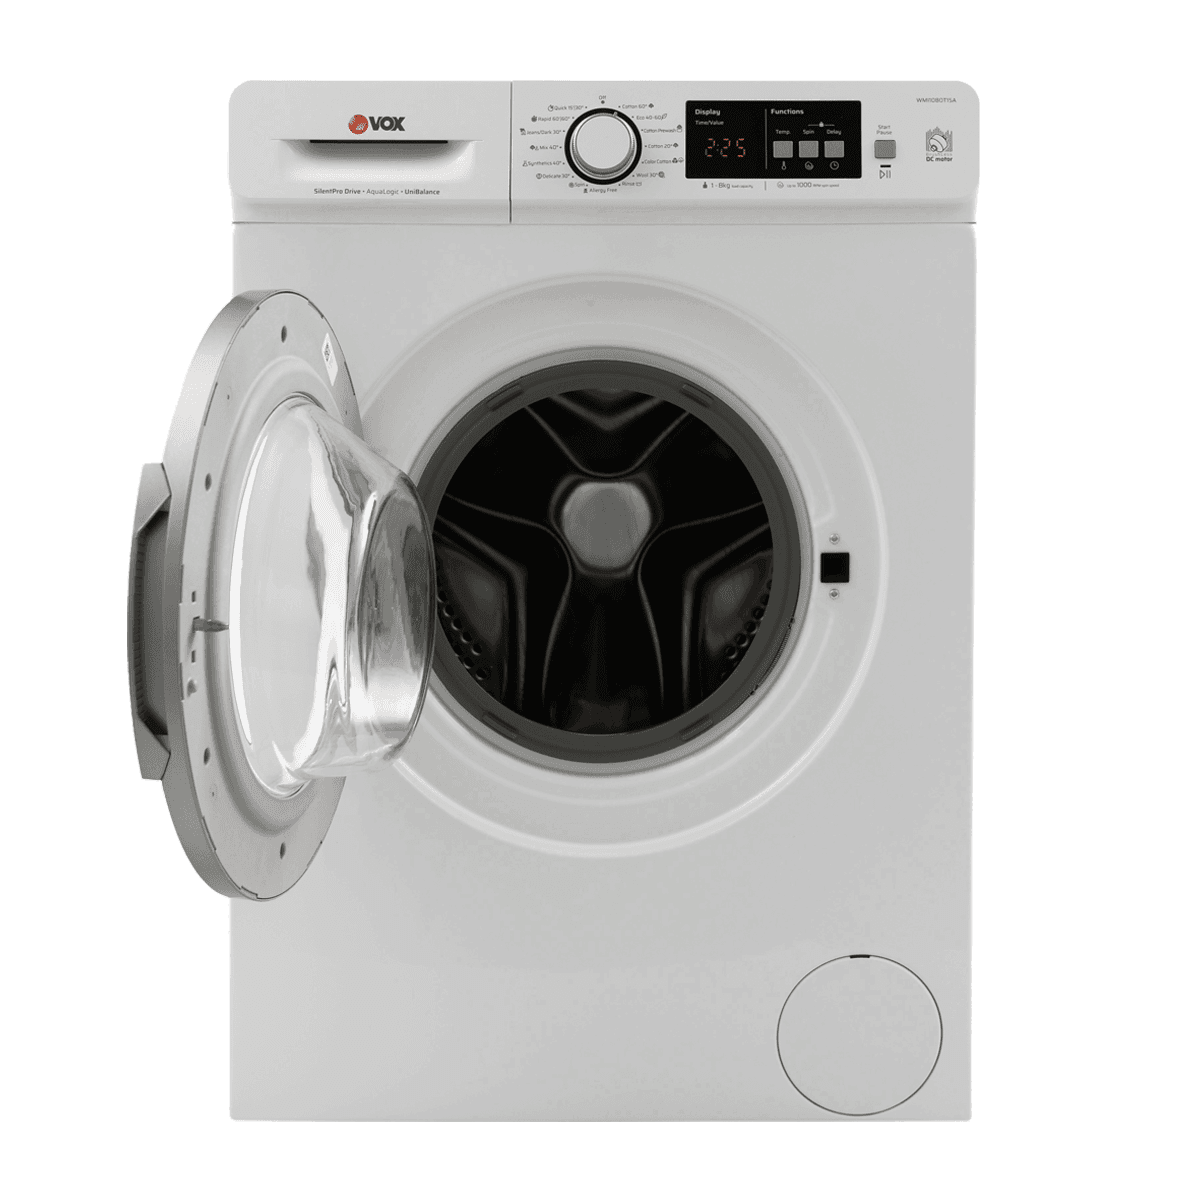 Selected image for VOX WMI 1080 T15A Mašina za pranje veša, 8kg, 15 programa, 51l, 1000rpm, Bela